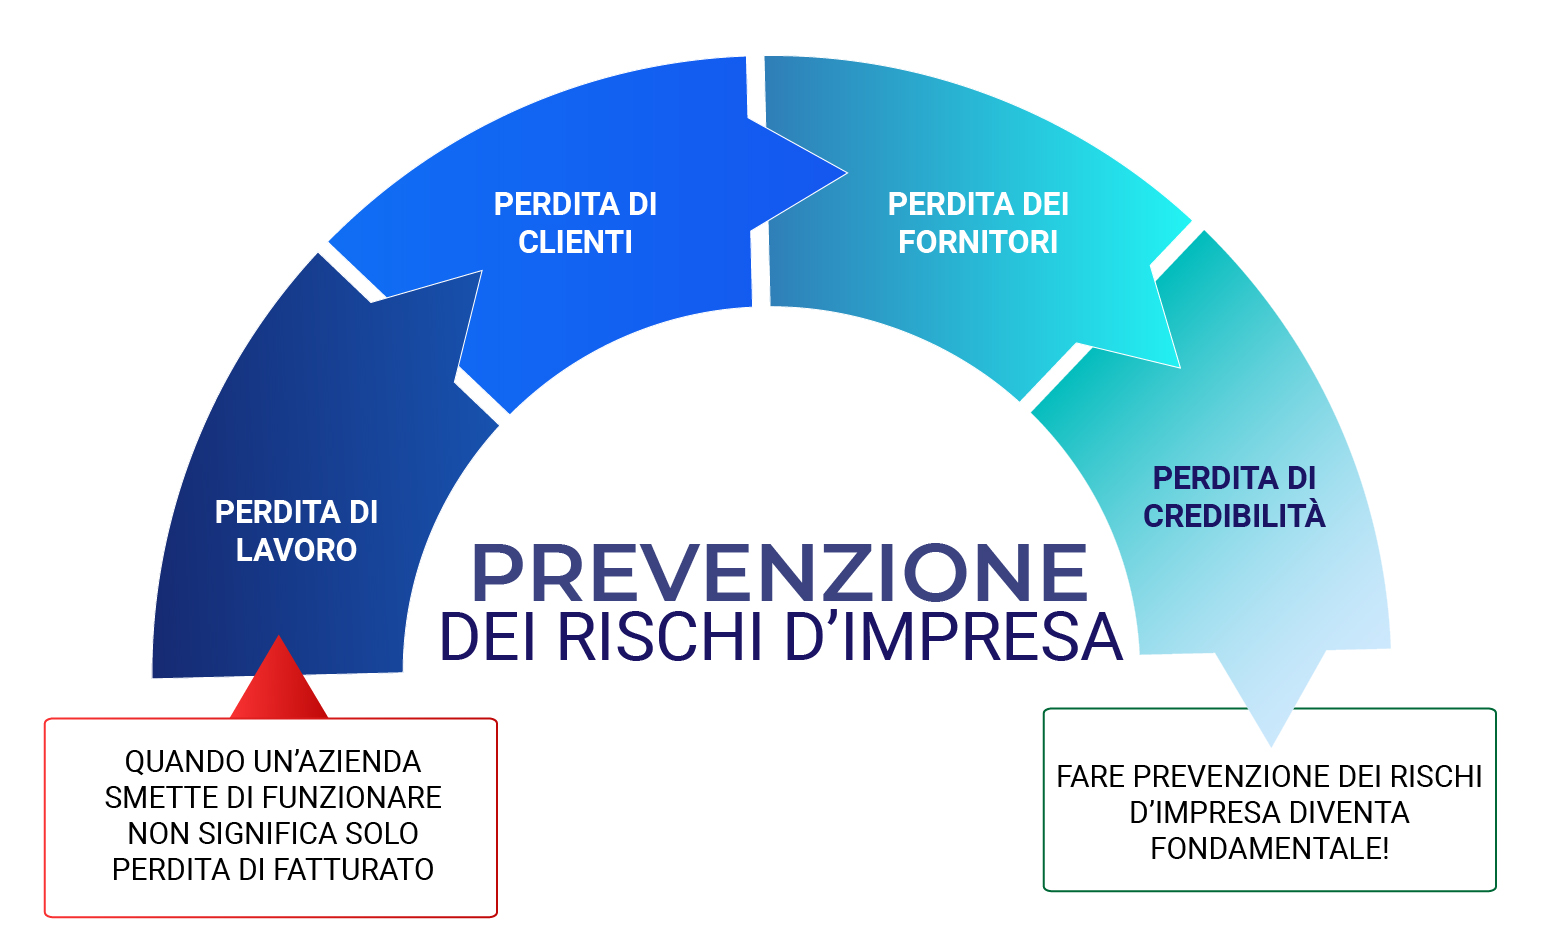 https://www.economiaprimaedopo.it/wp-content/uploads/2020/11/prevenzione-rischi-infografica.jpg